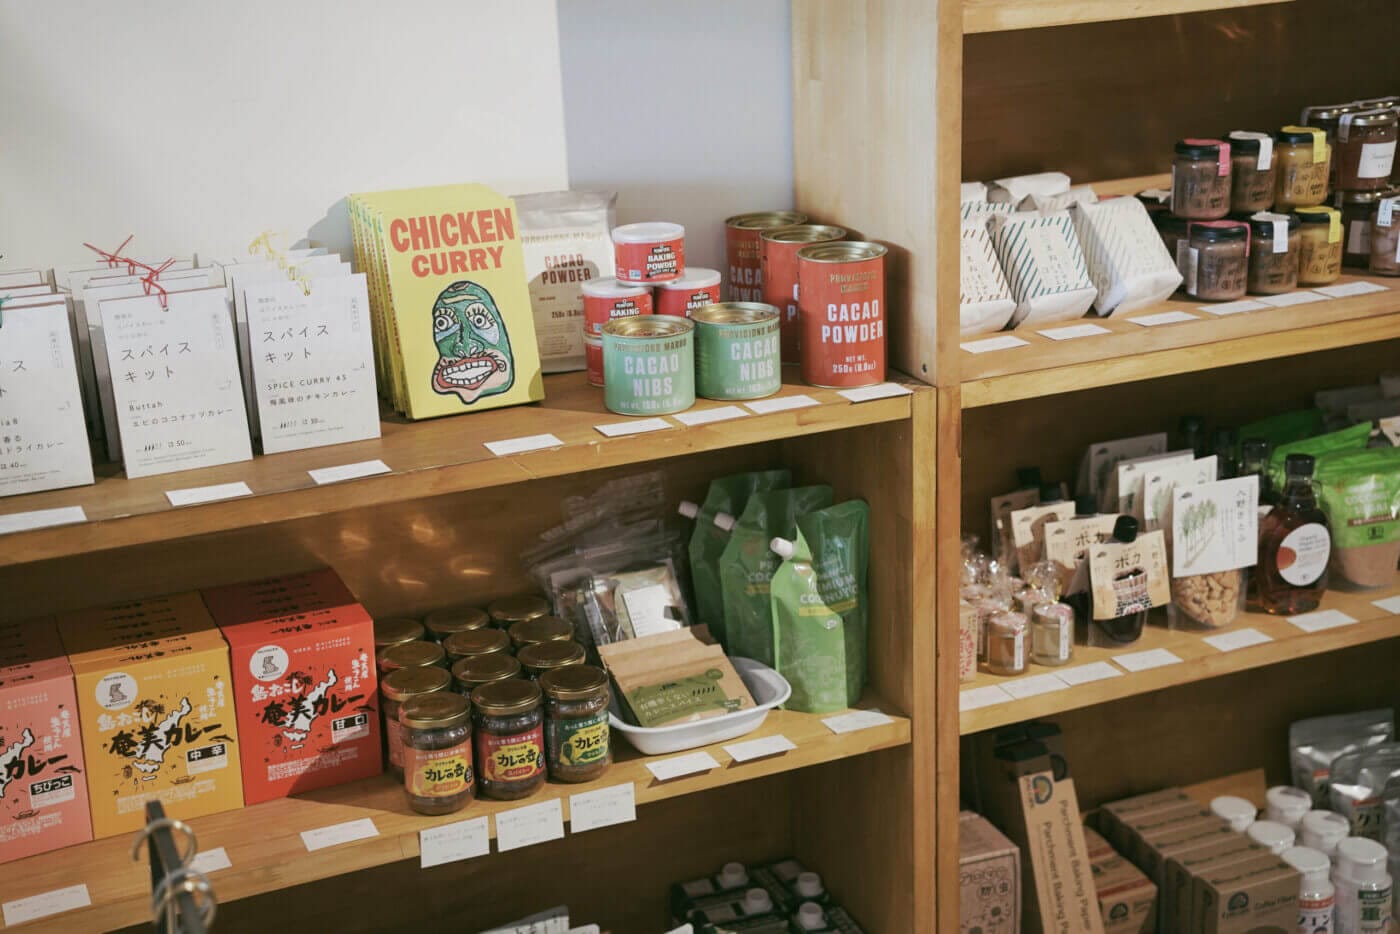 “安心できる、おいしい食品”を選りすぐって提供するオンラインストア「FOOD ORCHESTRA」が、大阪・阿倍野に実店舗をオープン。